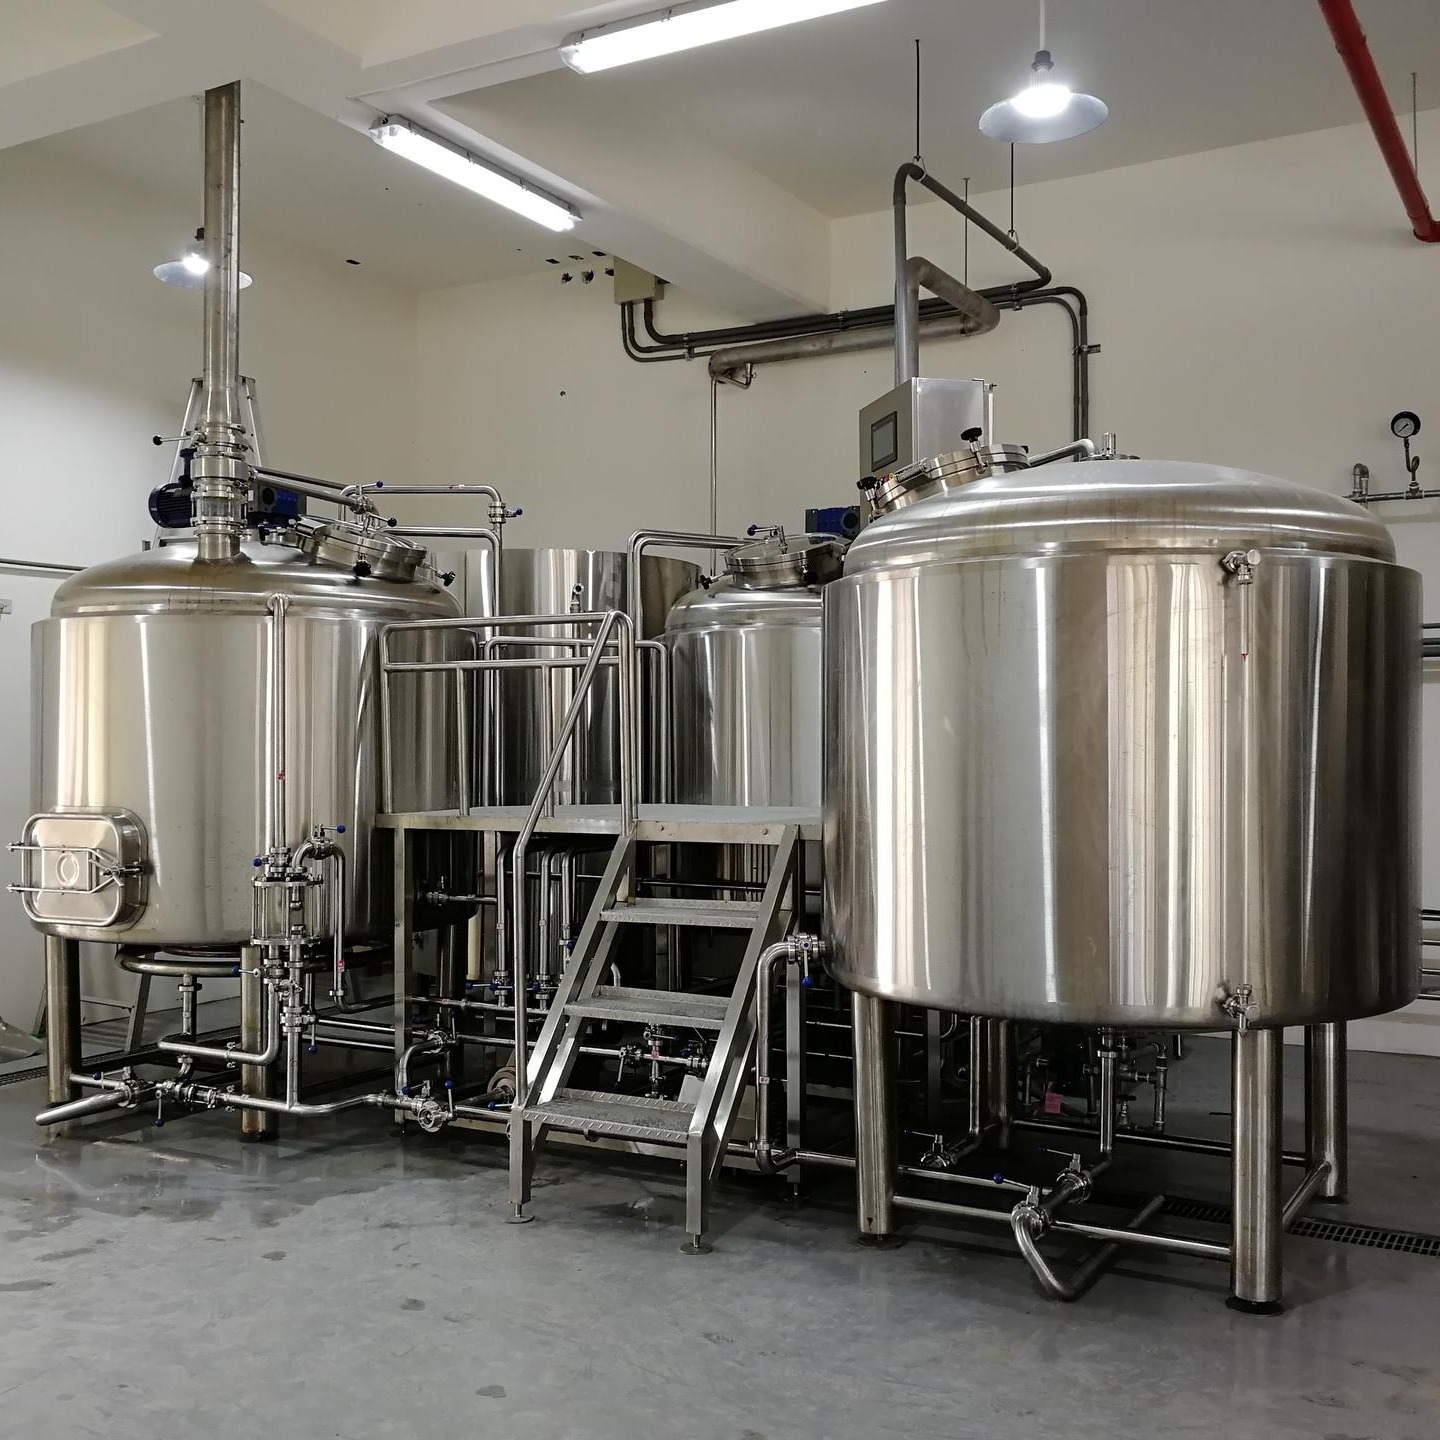 厂家供应啤酒屋用精酿啤酒设备 小型啤酒厂 酿酒设备 自酿扎啤机 啤酒原料 发酵罐图片